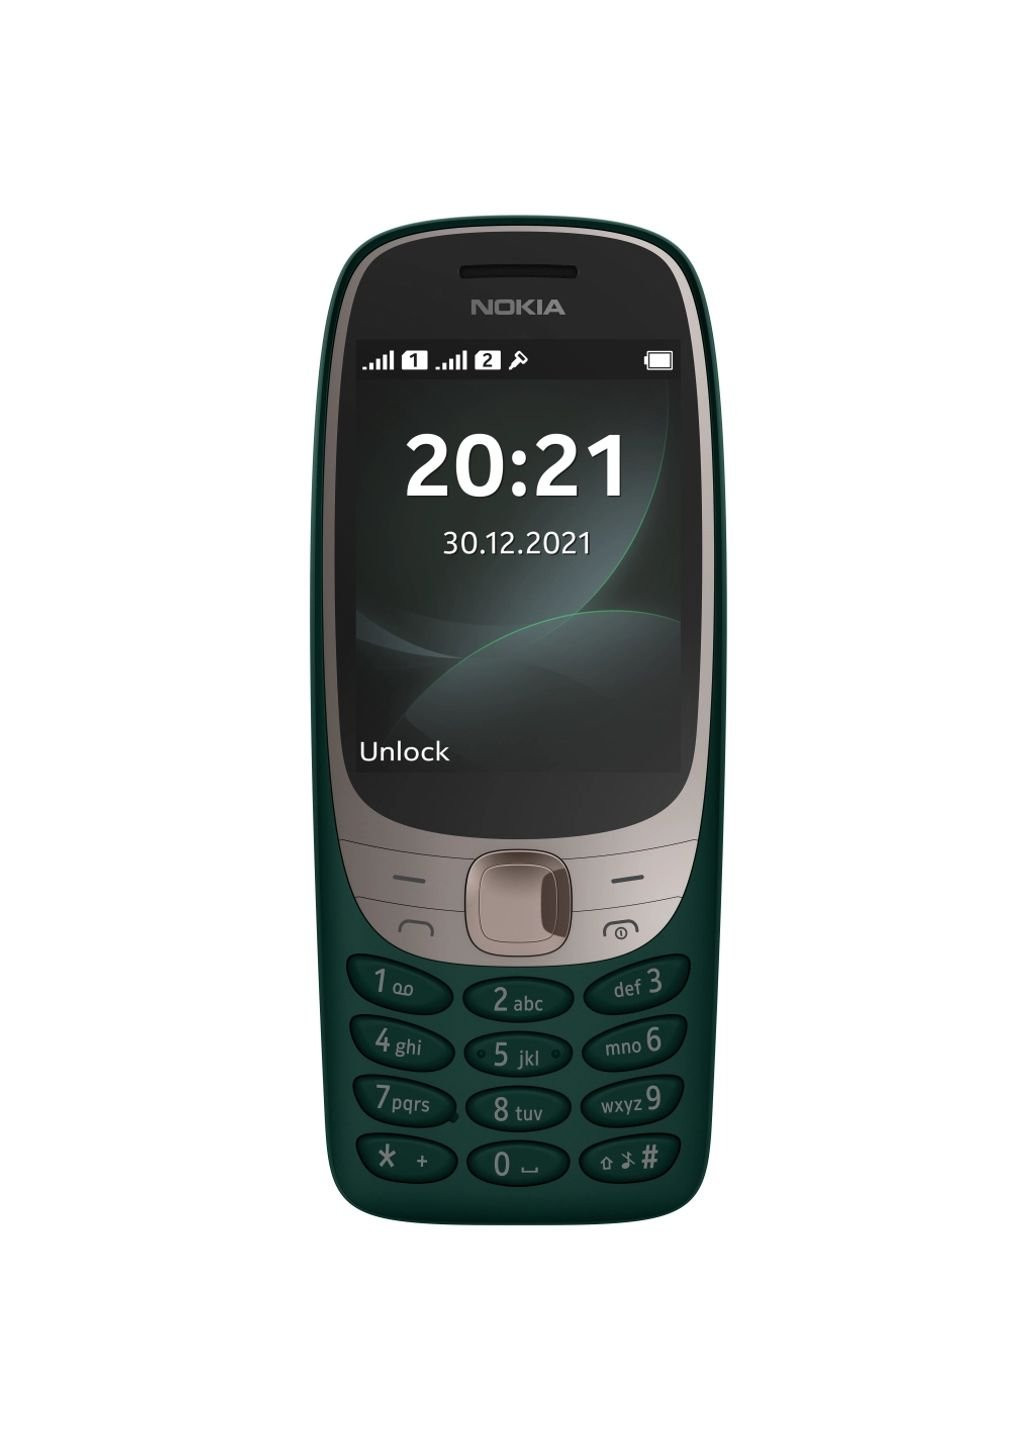 Мобильный телефон Nokia 6310 ds green (253507016)